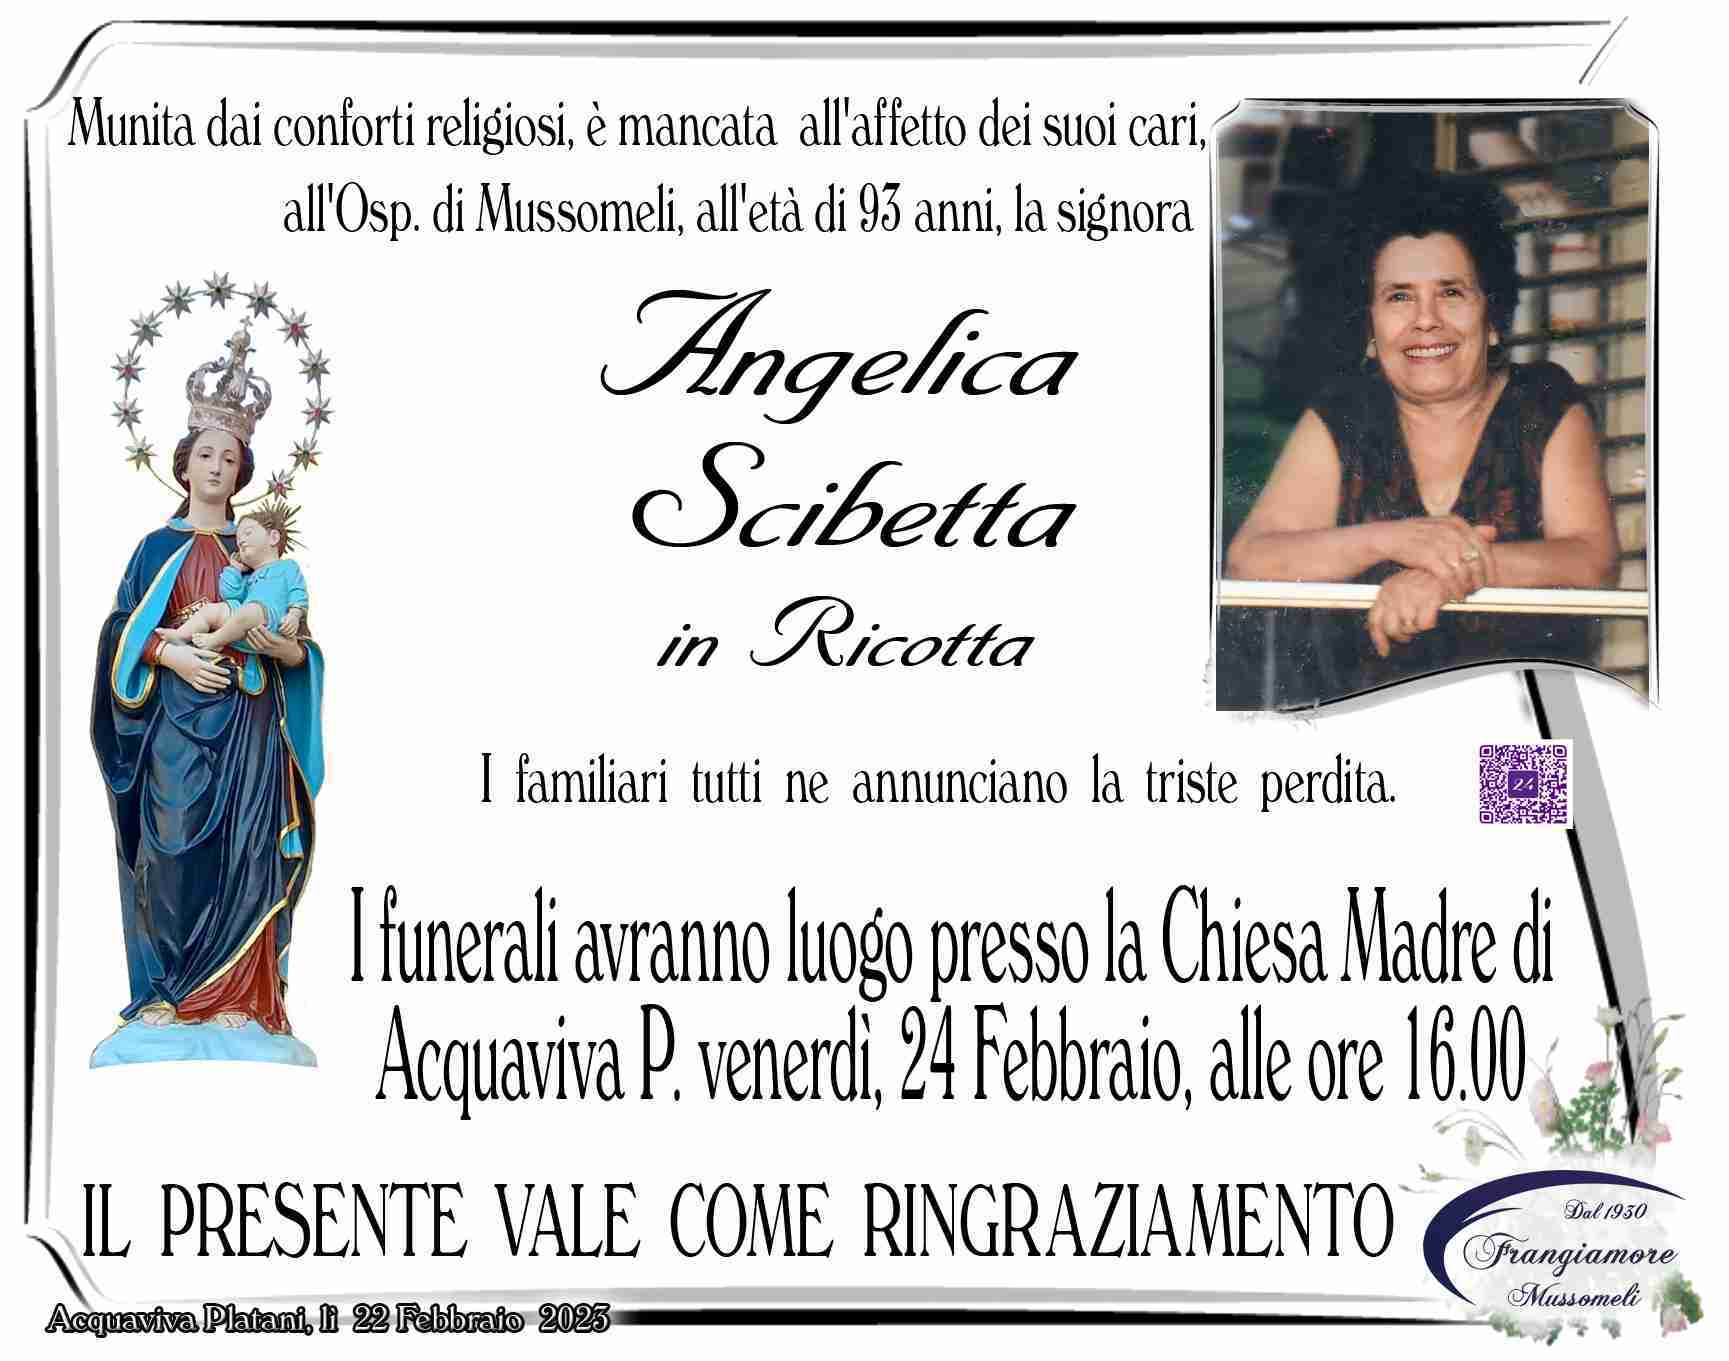 Angelica Scibetta